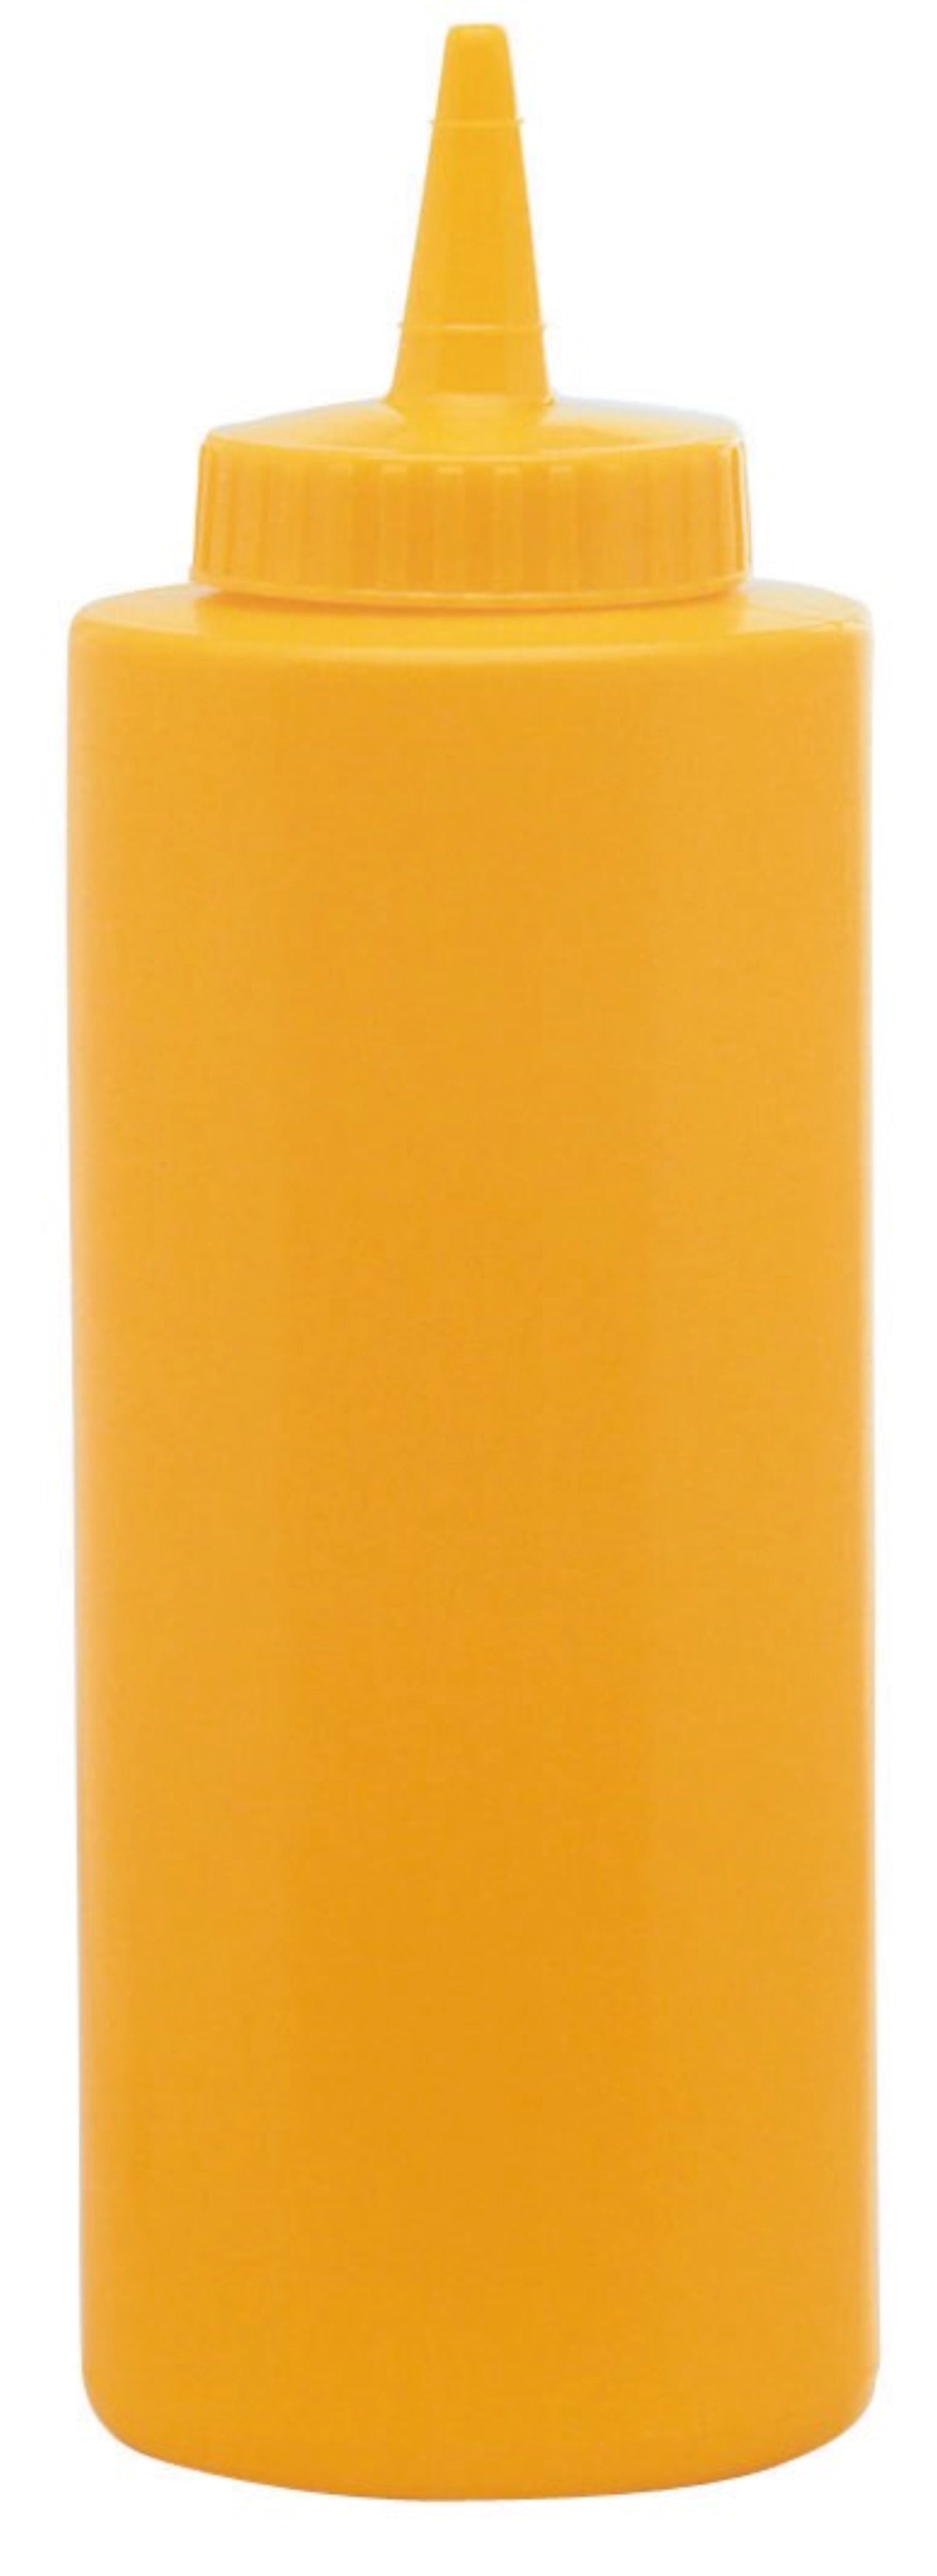 Saucen Dispenser gelb 0.236lt - KAQTU Design